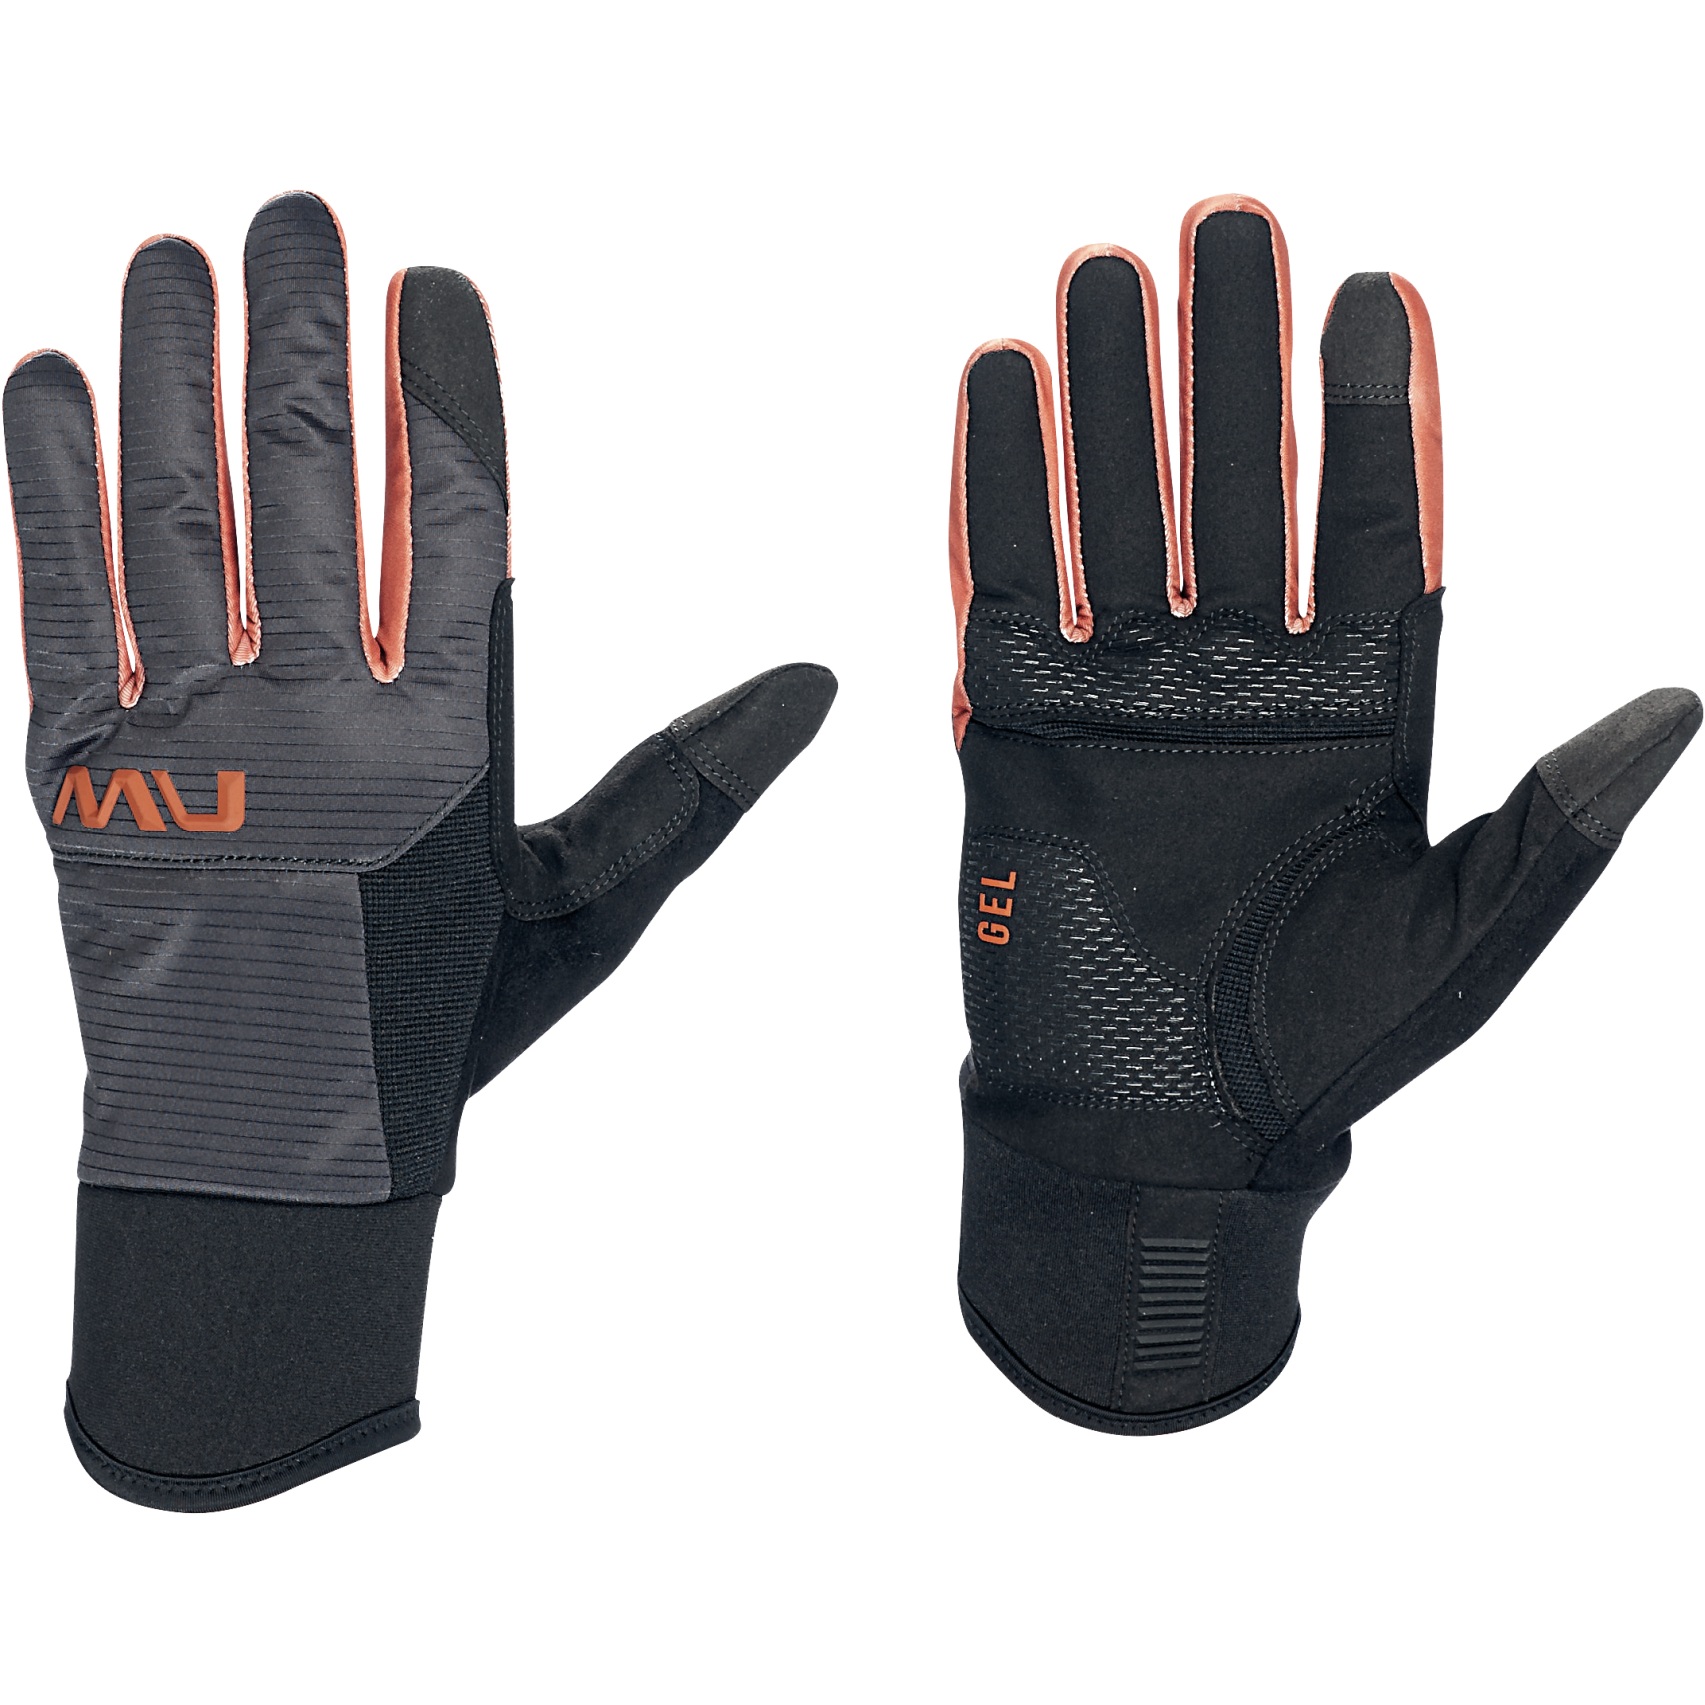 Produktbild von Northwave Fast Gel Handschuhe Herren - schwarz/cinnamon 13